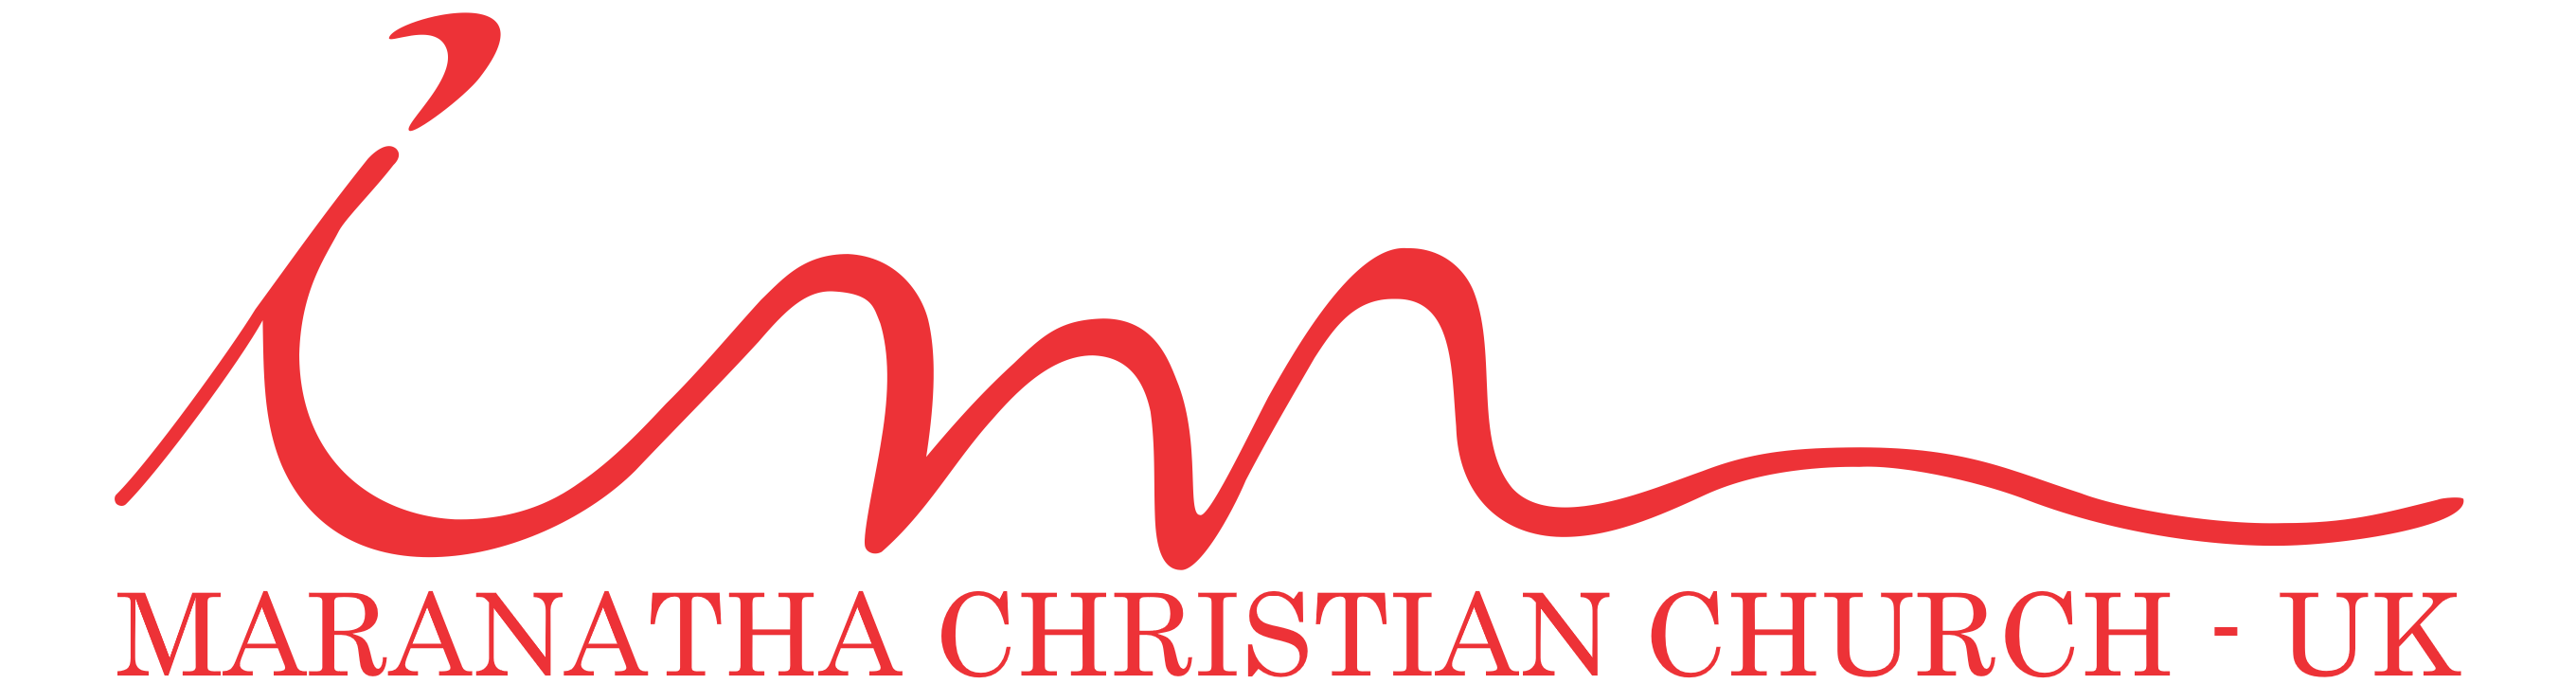 Maranatha Christian Church UK